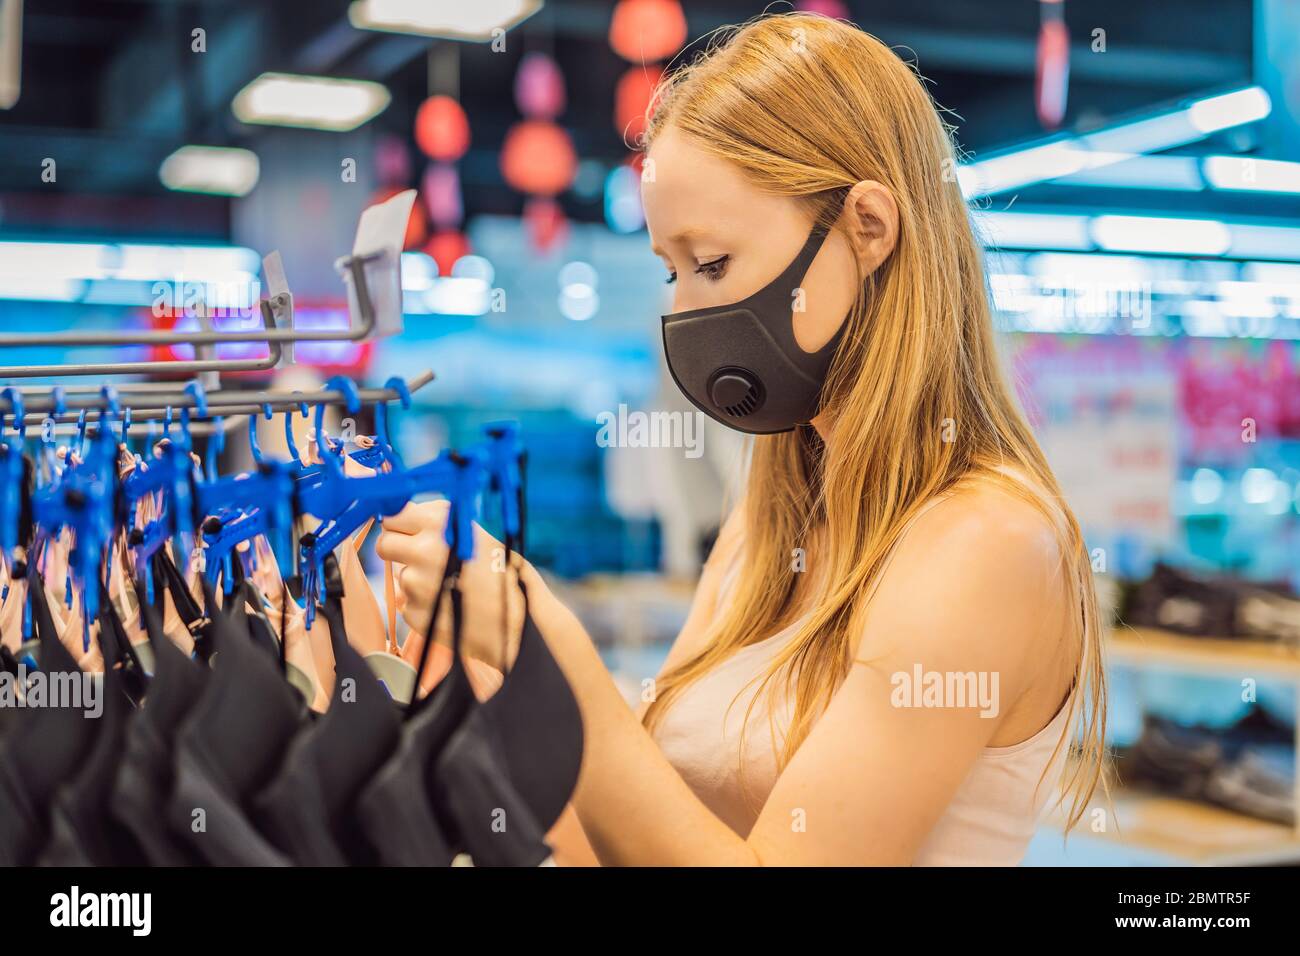 Frau in einem Bekleidungsgeschäft in einer medizinischen Maske wegen eines Coronovirus. Die Quarantäne ist vorbei, jetzt könnt Ihr zum Bekleidungsgeschäft gehen Stockfoto